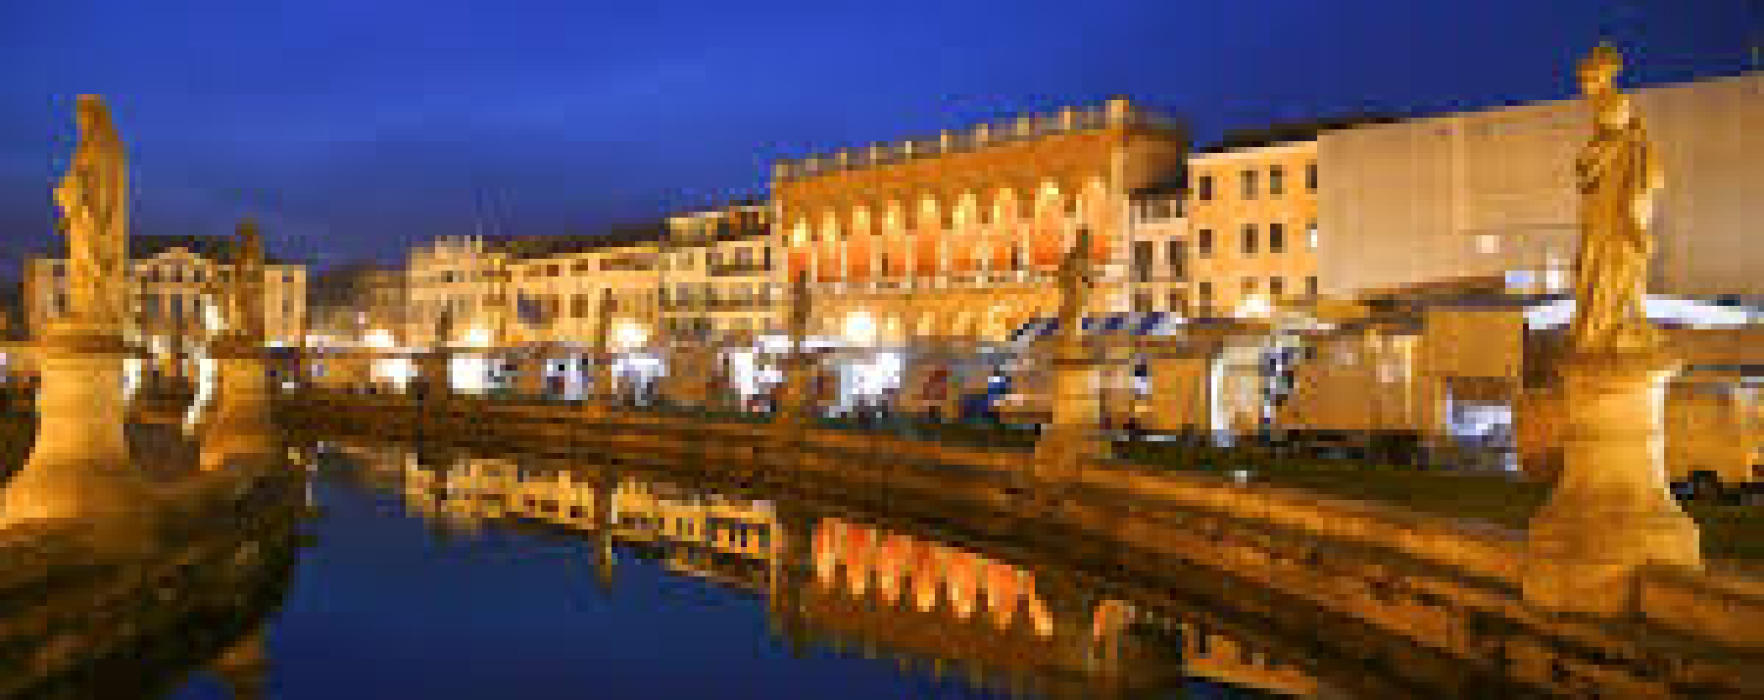 Padova: mura alte, porte chiuse